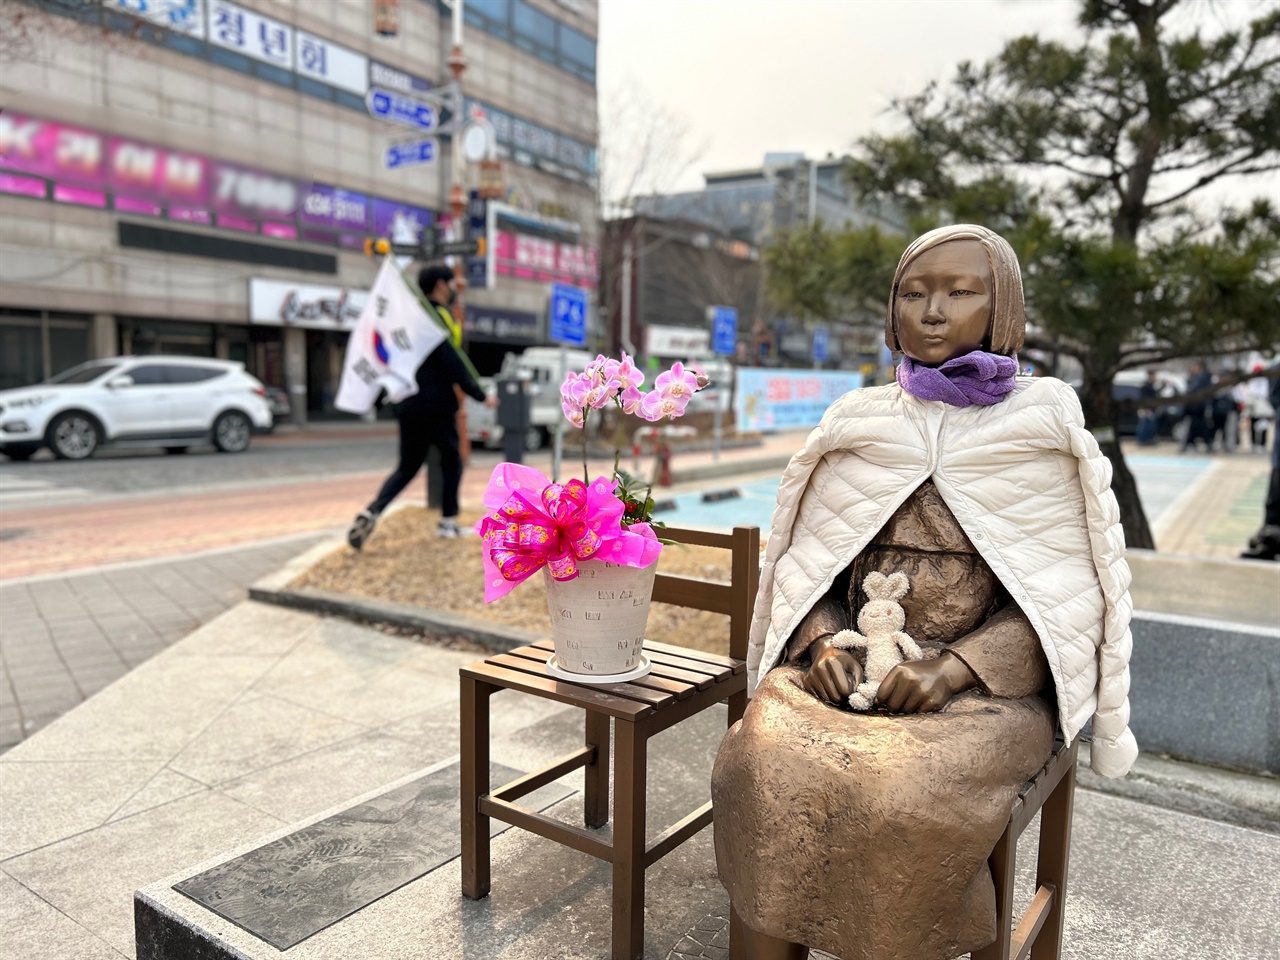 ‘홍성 평화의 소녀상’에서는 치열한 항일독립운동을 전개했던 3.1운동을 기념하는 홍성문화연대의 공연이 이어졌다. 